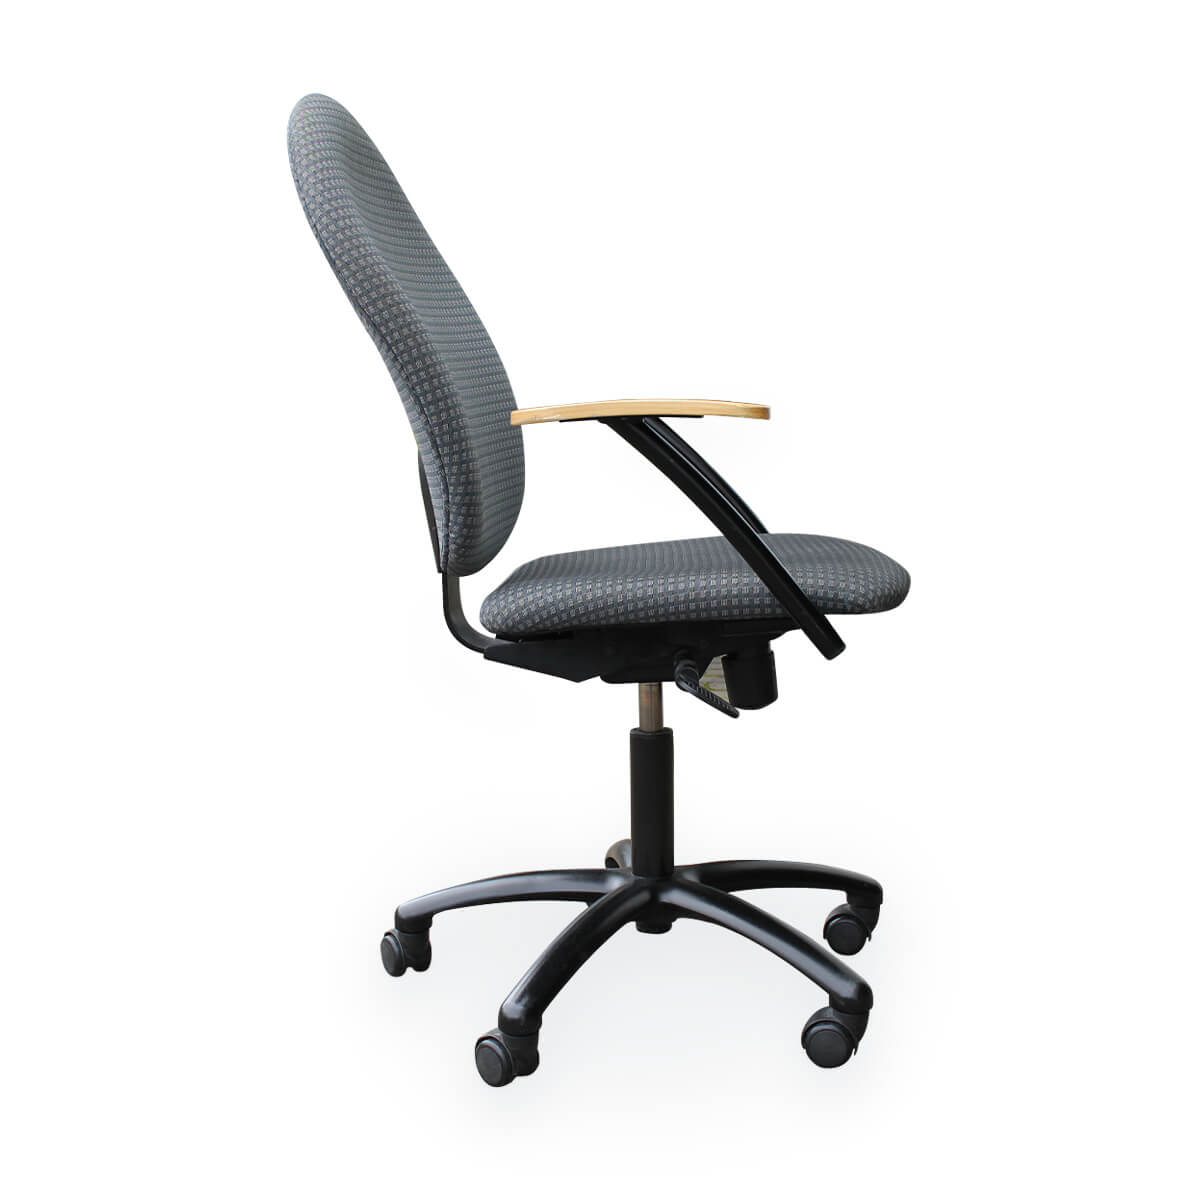 Naudotos biuro kėdės - Nowy Styl